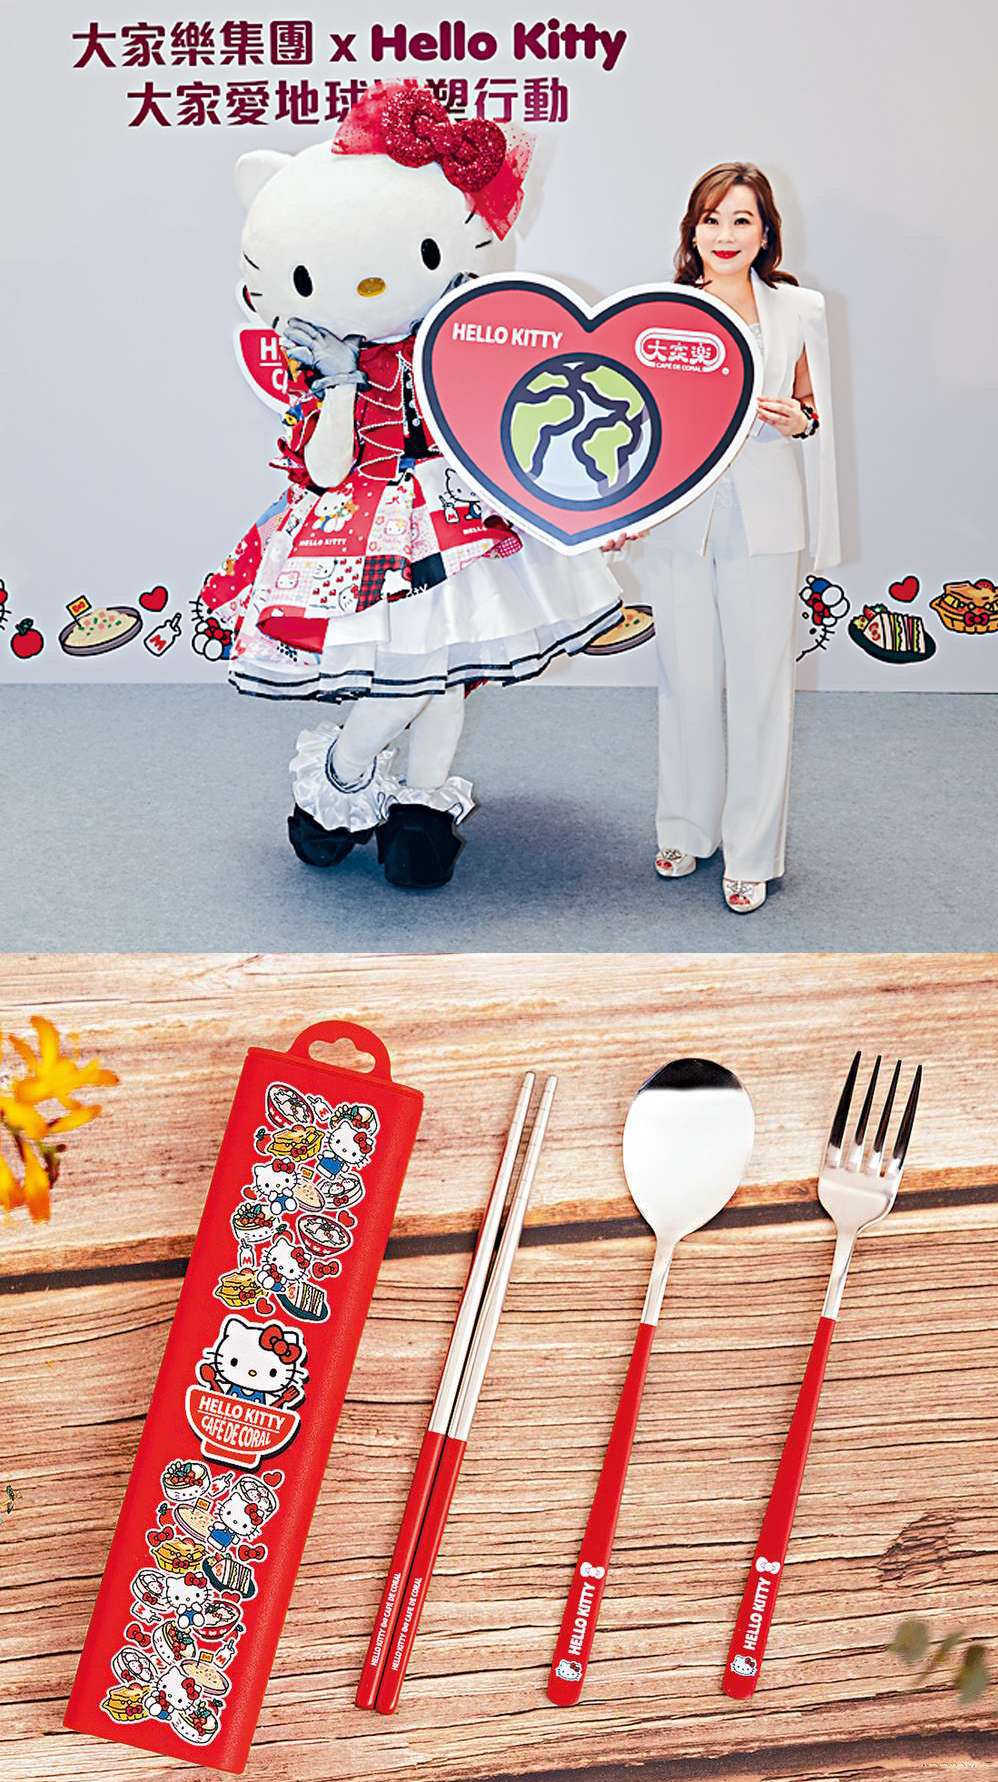 Hello Kitty環保餐具一套有齊不鏽鋼筷子、匙羹和叉，用上Hello Kitty經典紅色設計，配合蝴蝶結圖案，粉絲必儲！